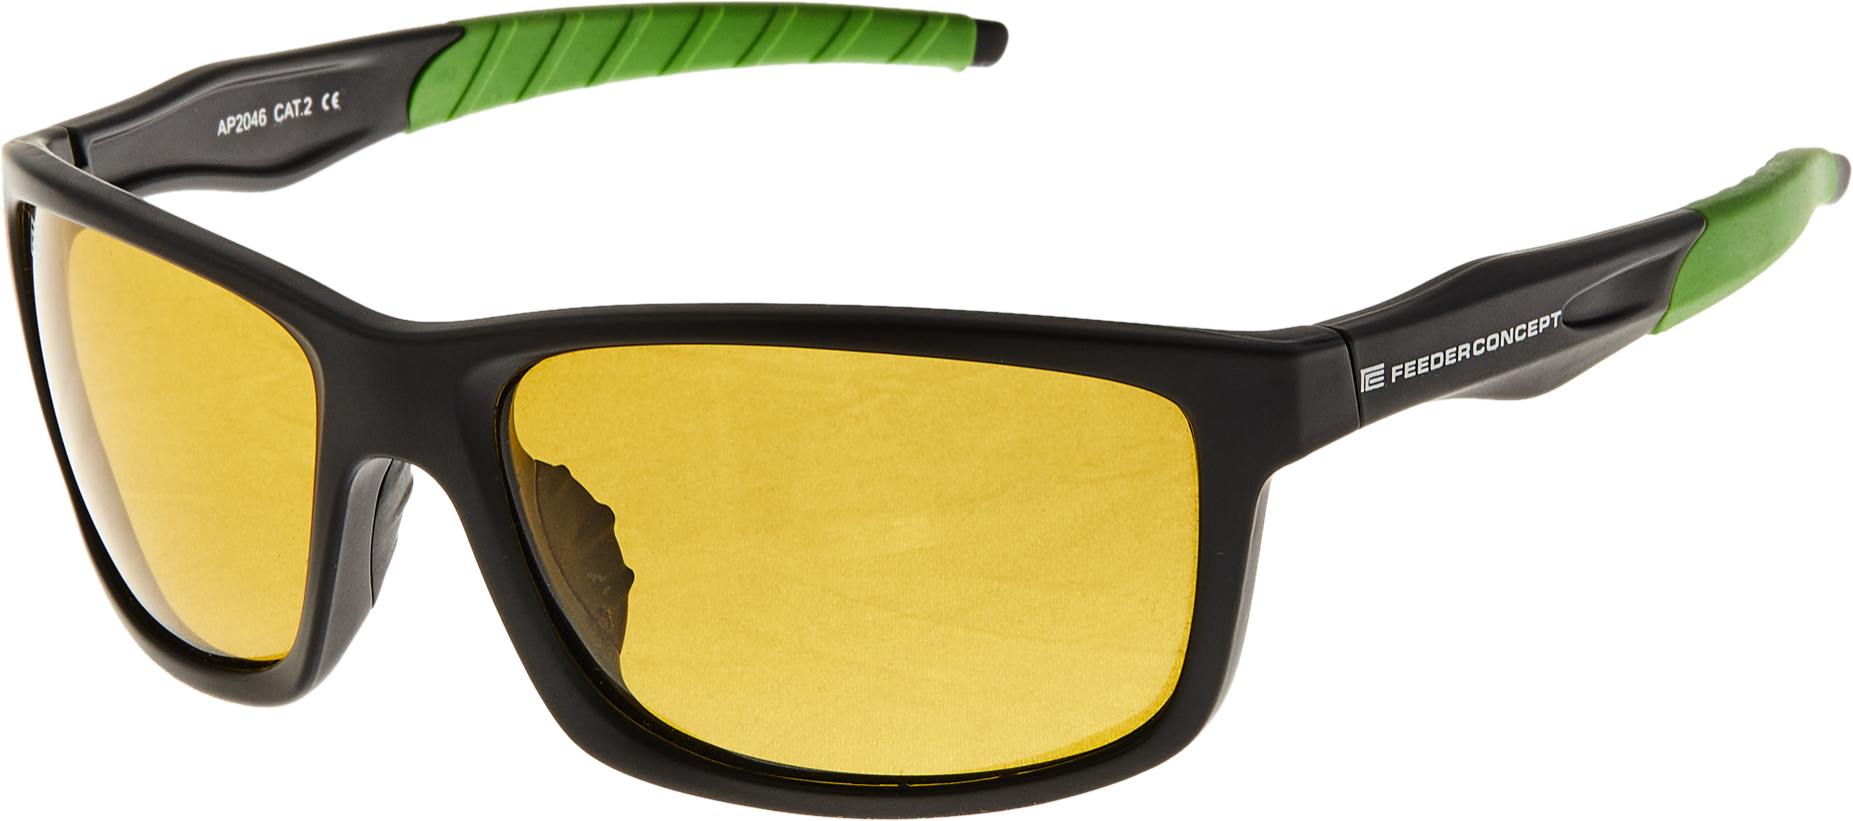 Очки Feeder Concept 04 Yellow (NF-FC2004) – низкие цены, кредит, оплата .